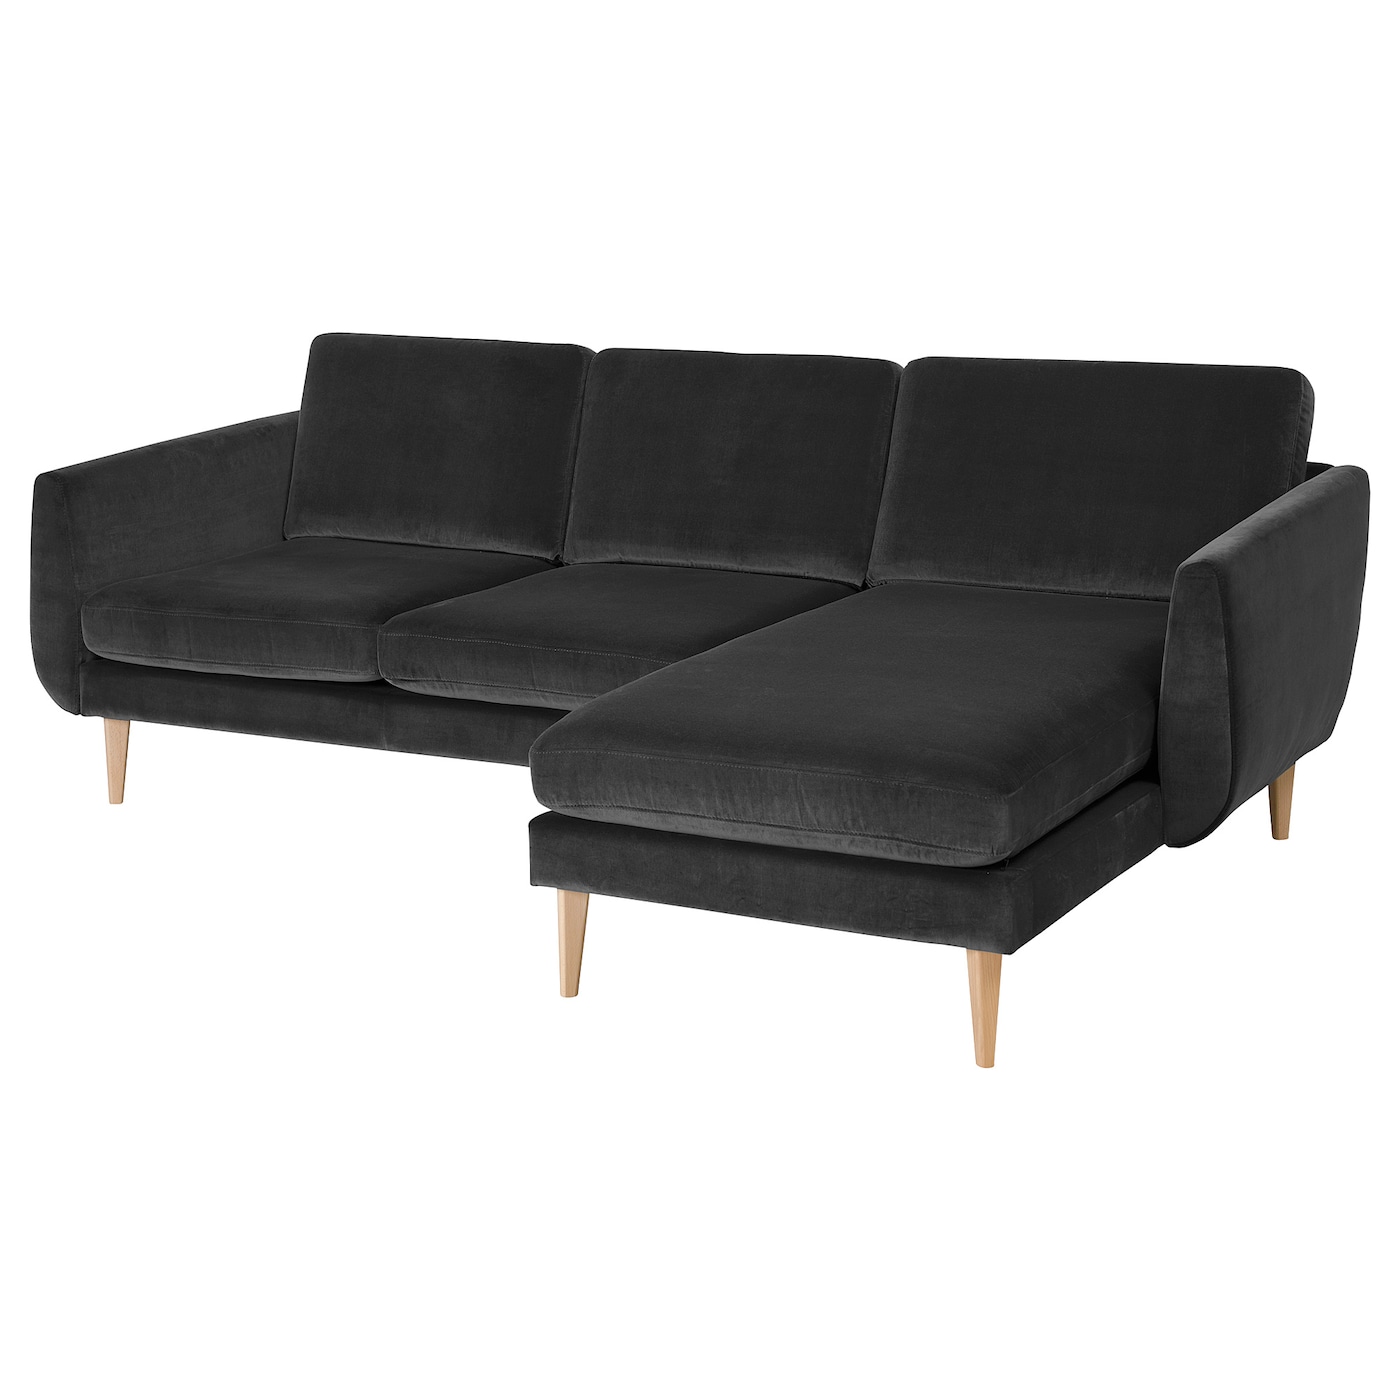 диван трансформер ладья майами серый с цветными подушками СМЕДСТОРП 3-местный диван + диван, Дюпарп/дуб темно-серый SMEDSTORP IKEA